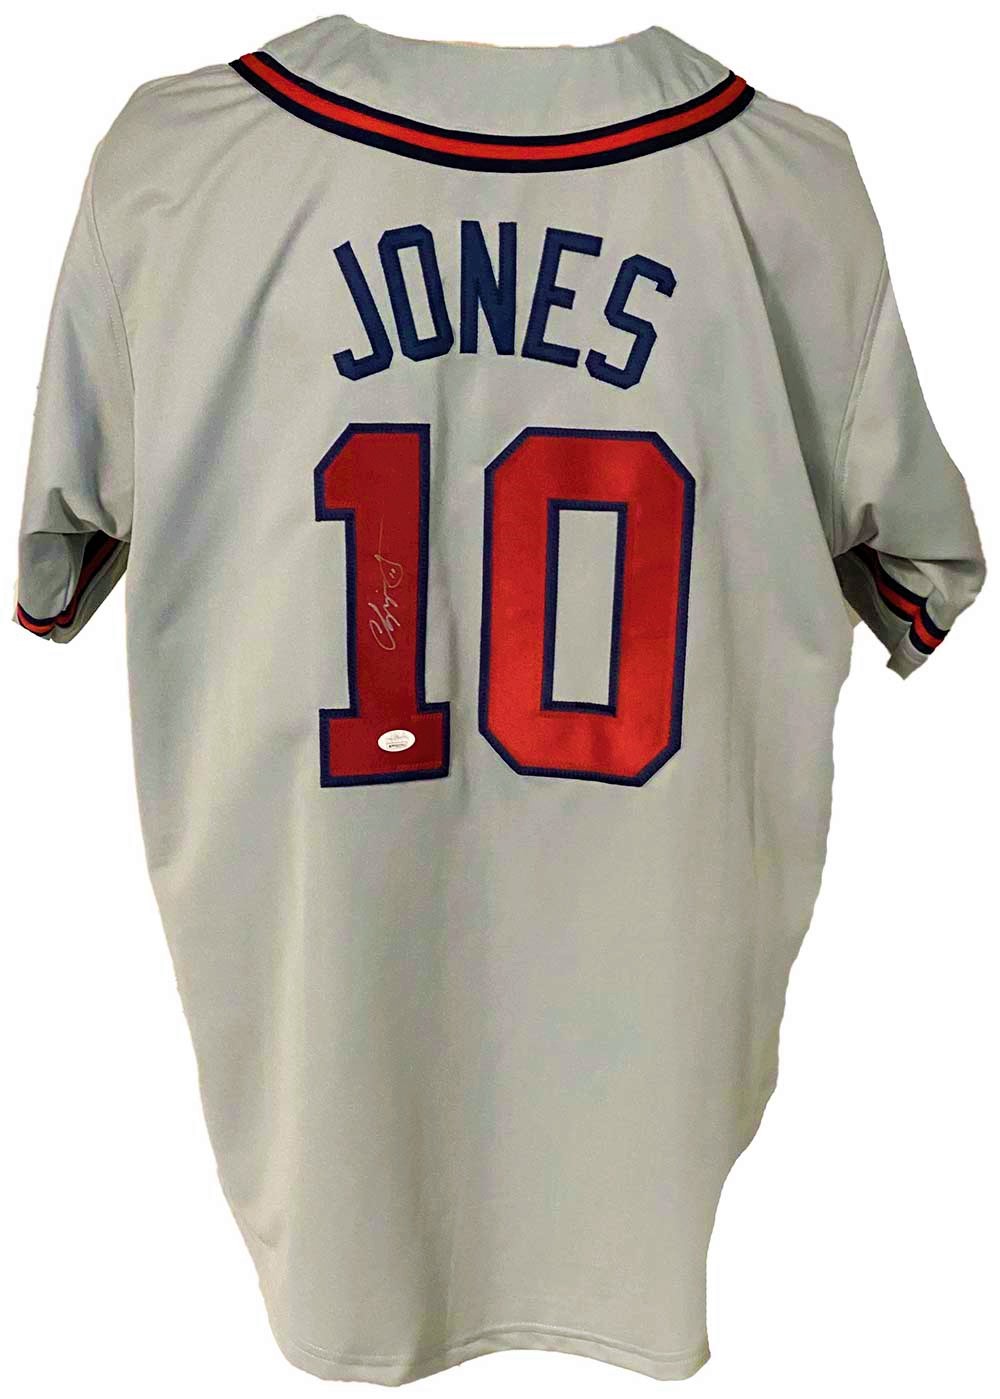 Atlanta Braves Chipper Jones Signed Pro Style Grey Jersey JSA Authenticated